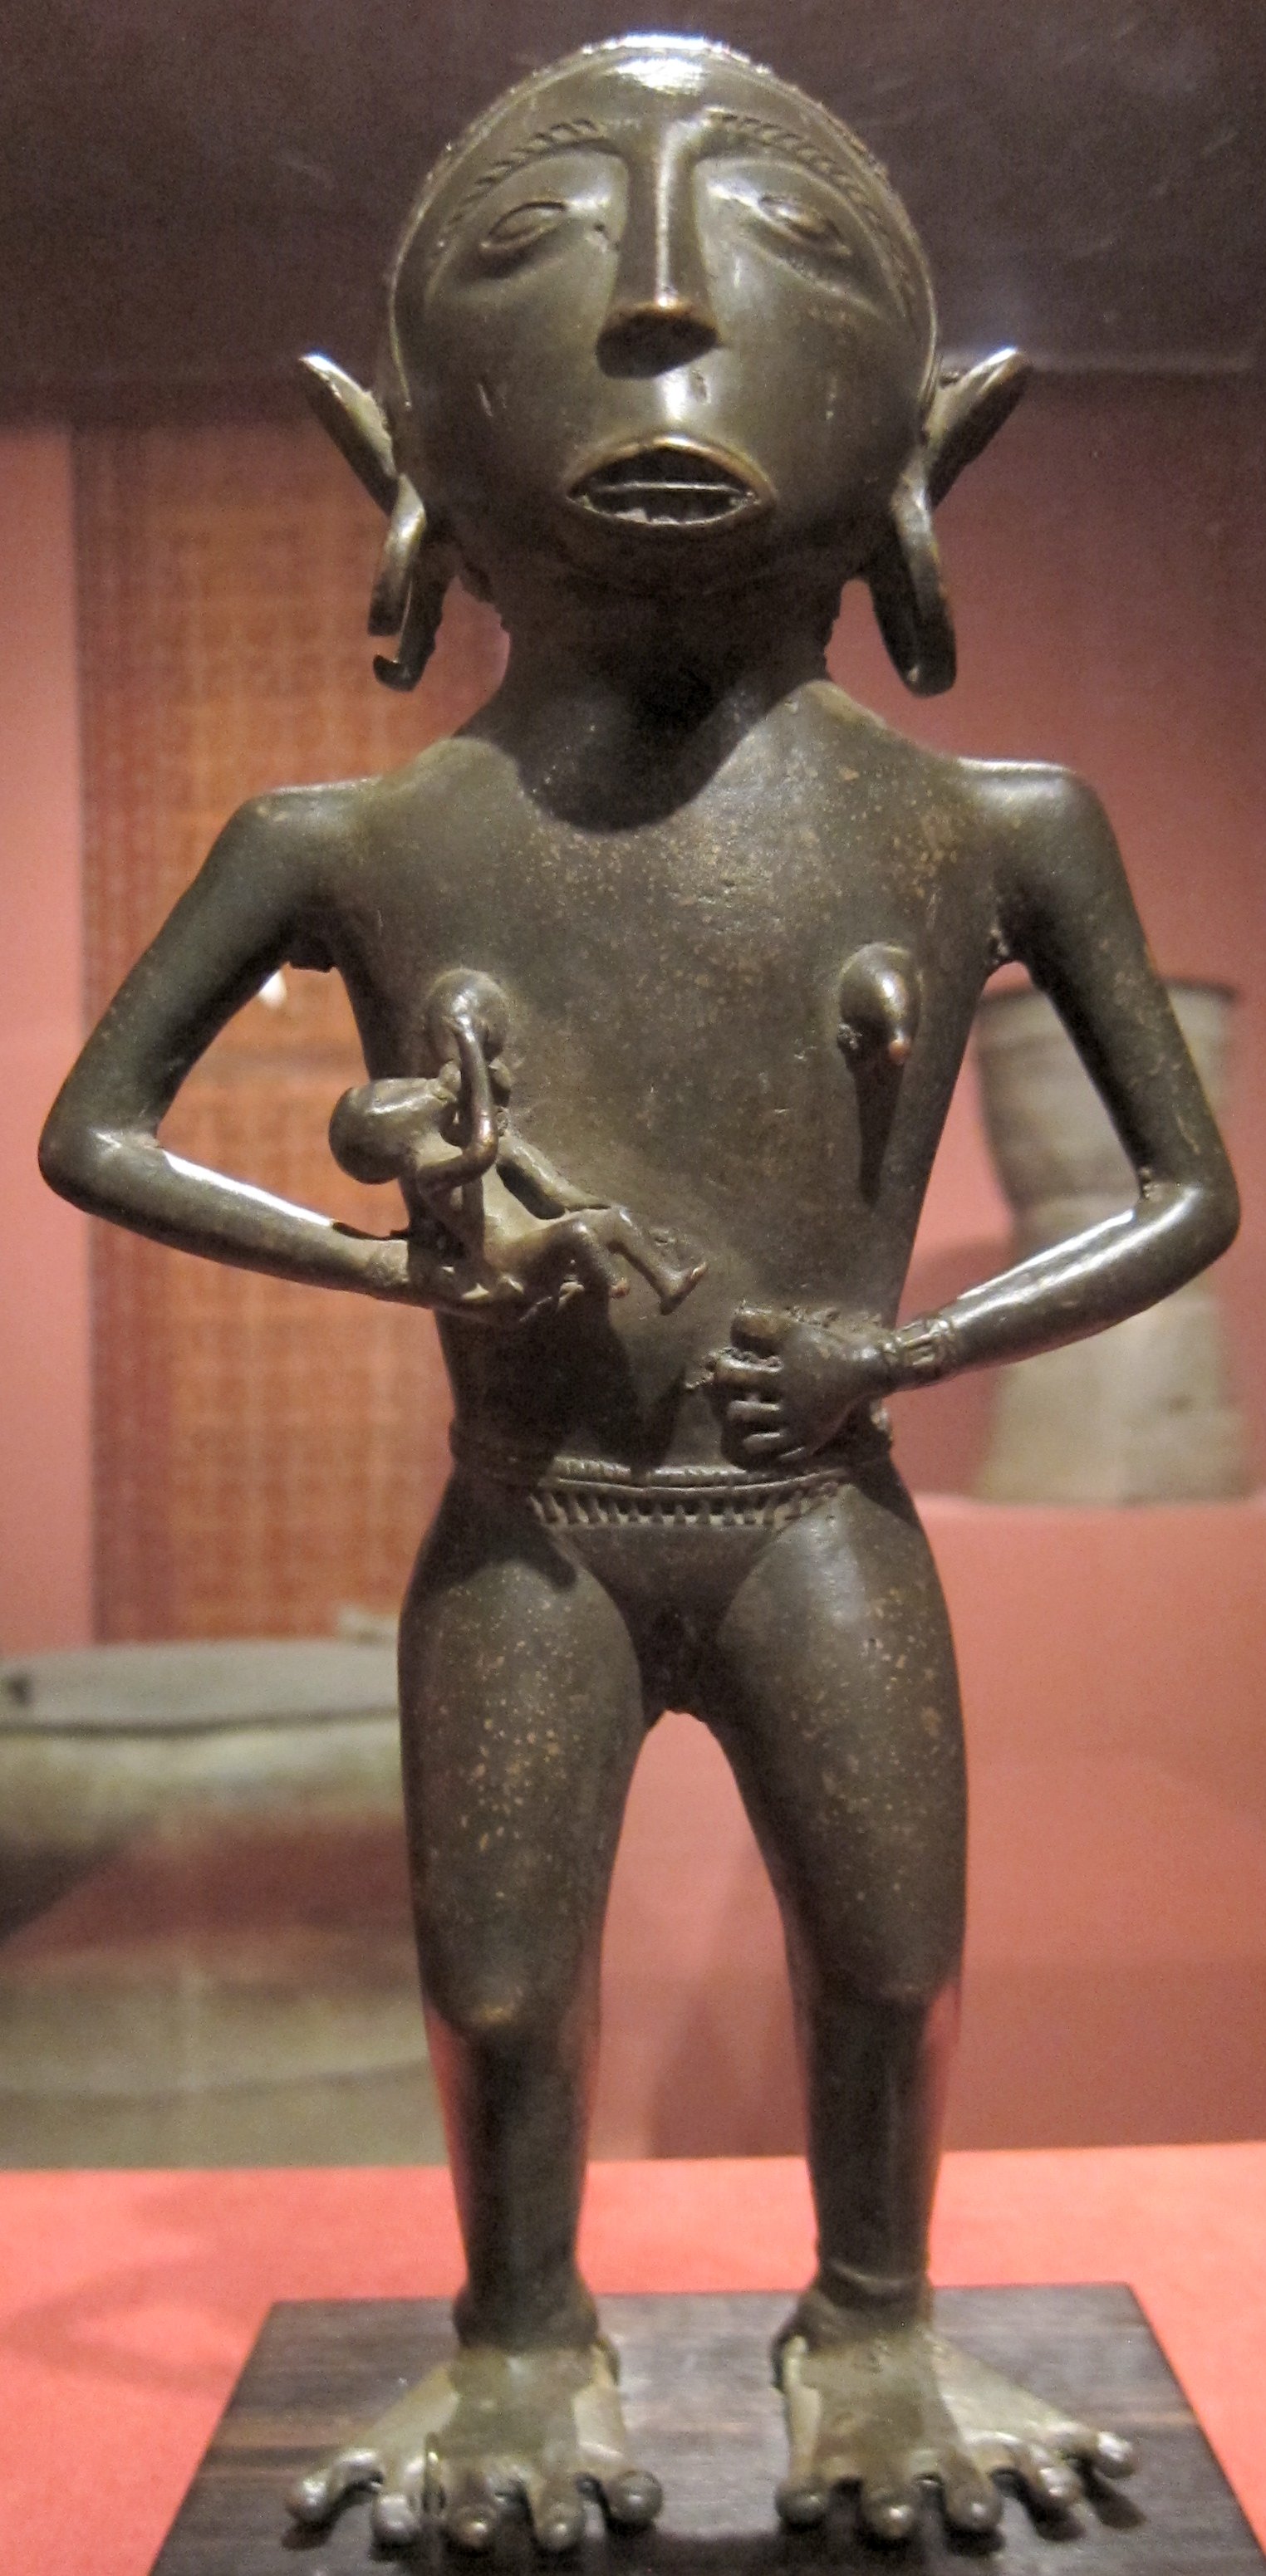 File:Maternity figure, Borneo, c. 200 BCE, bronze, Honolulu Museum